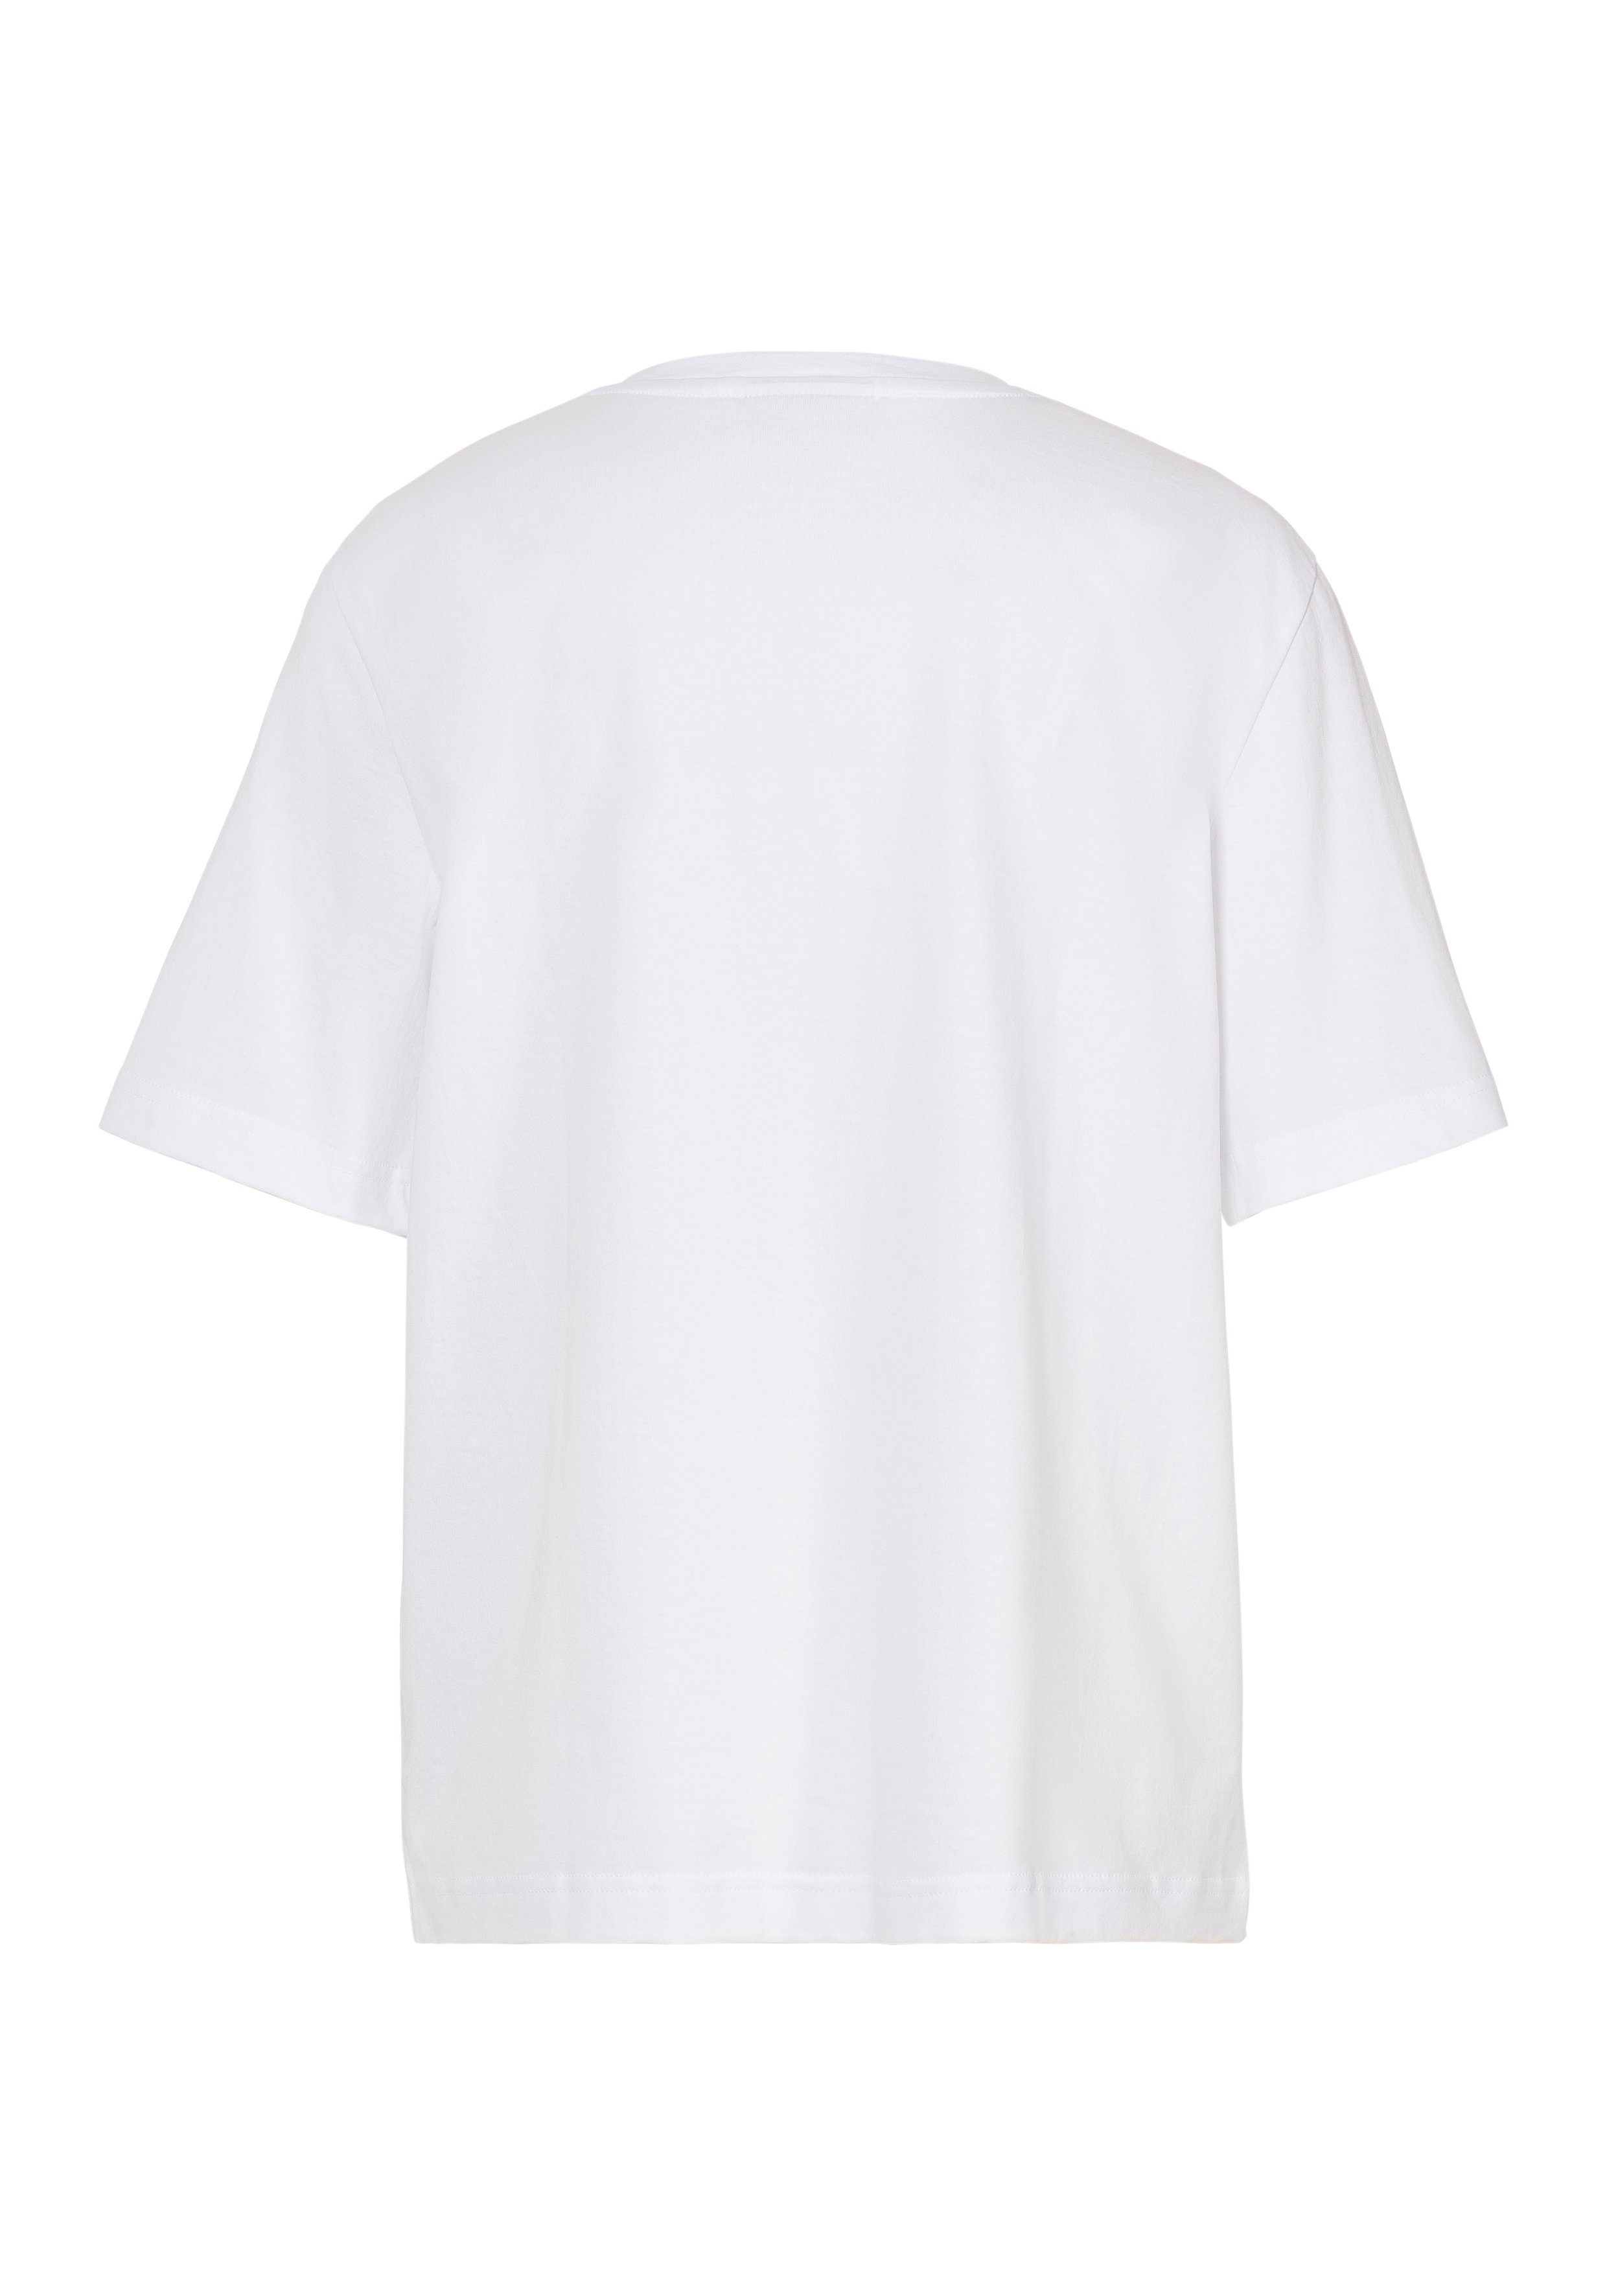 Lacoste T-Shirt mit auf Logo der Lacoste Brust